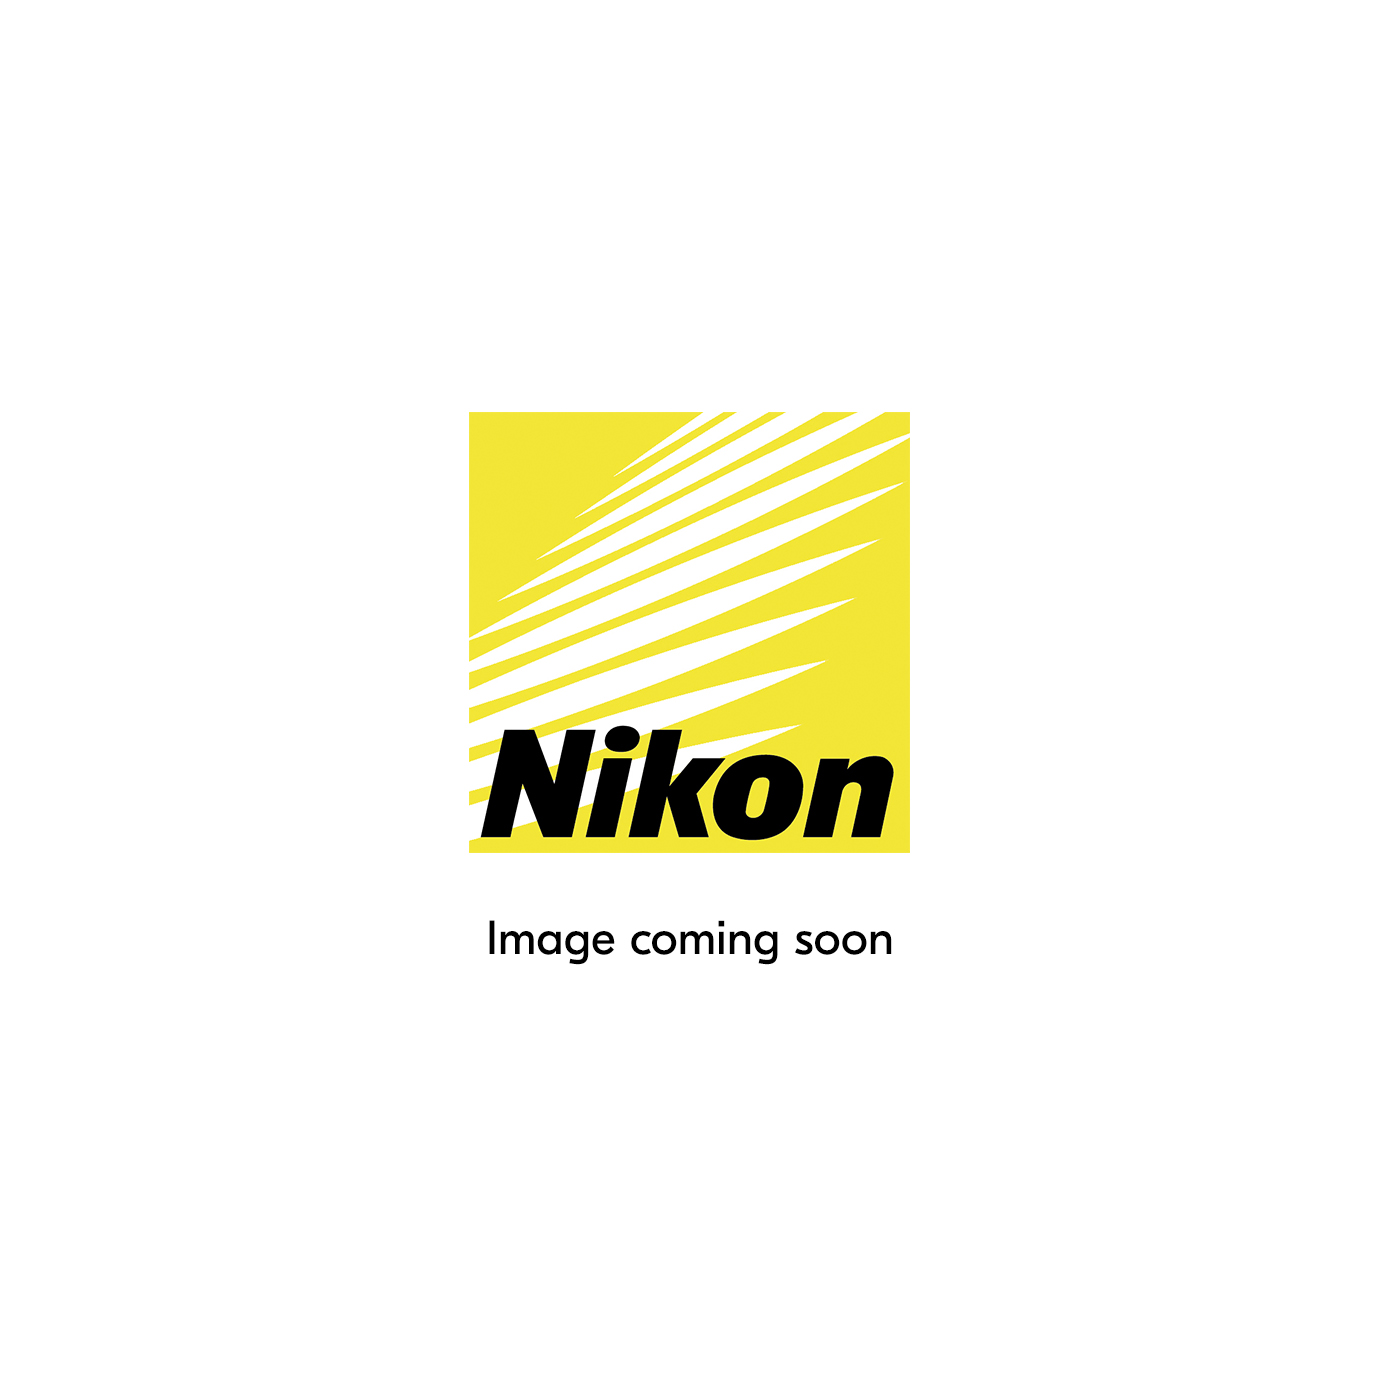 Стабильный контроль экспозиции |  Фотоаппараты, объективы и аксессуары Nikon